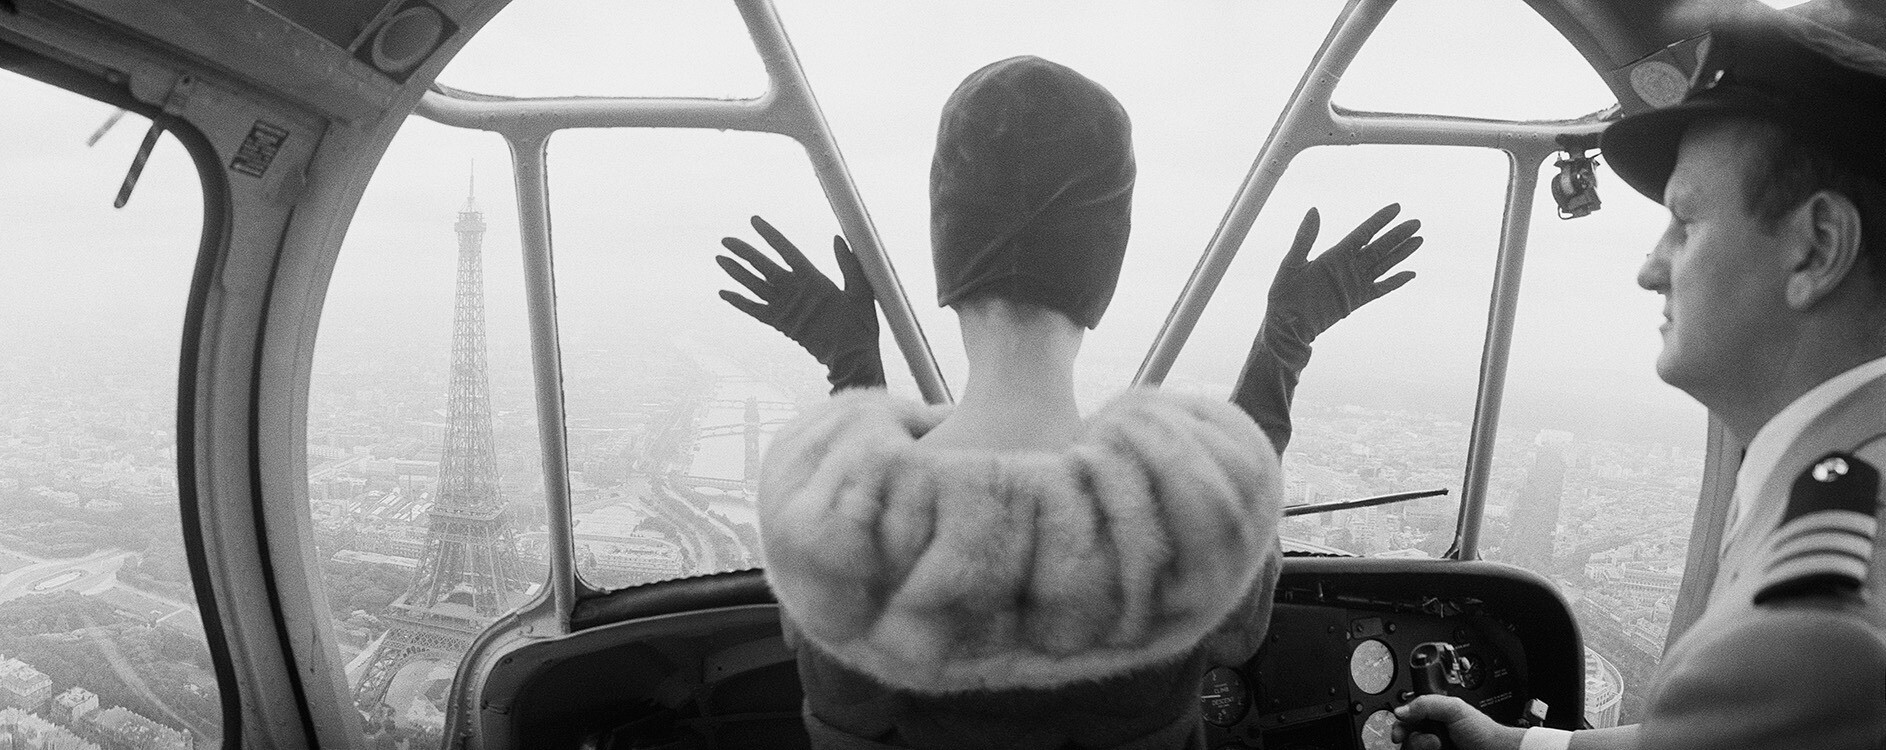 Нена фон Шлебрюгге в бархатной шляпе из бархата от Cardin. в вертолете, летящем над Эйфелевой башней. Королева, 31 августа 1960 г. Фотограф Норман Паркинсон